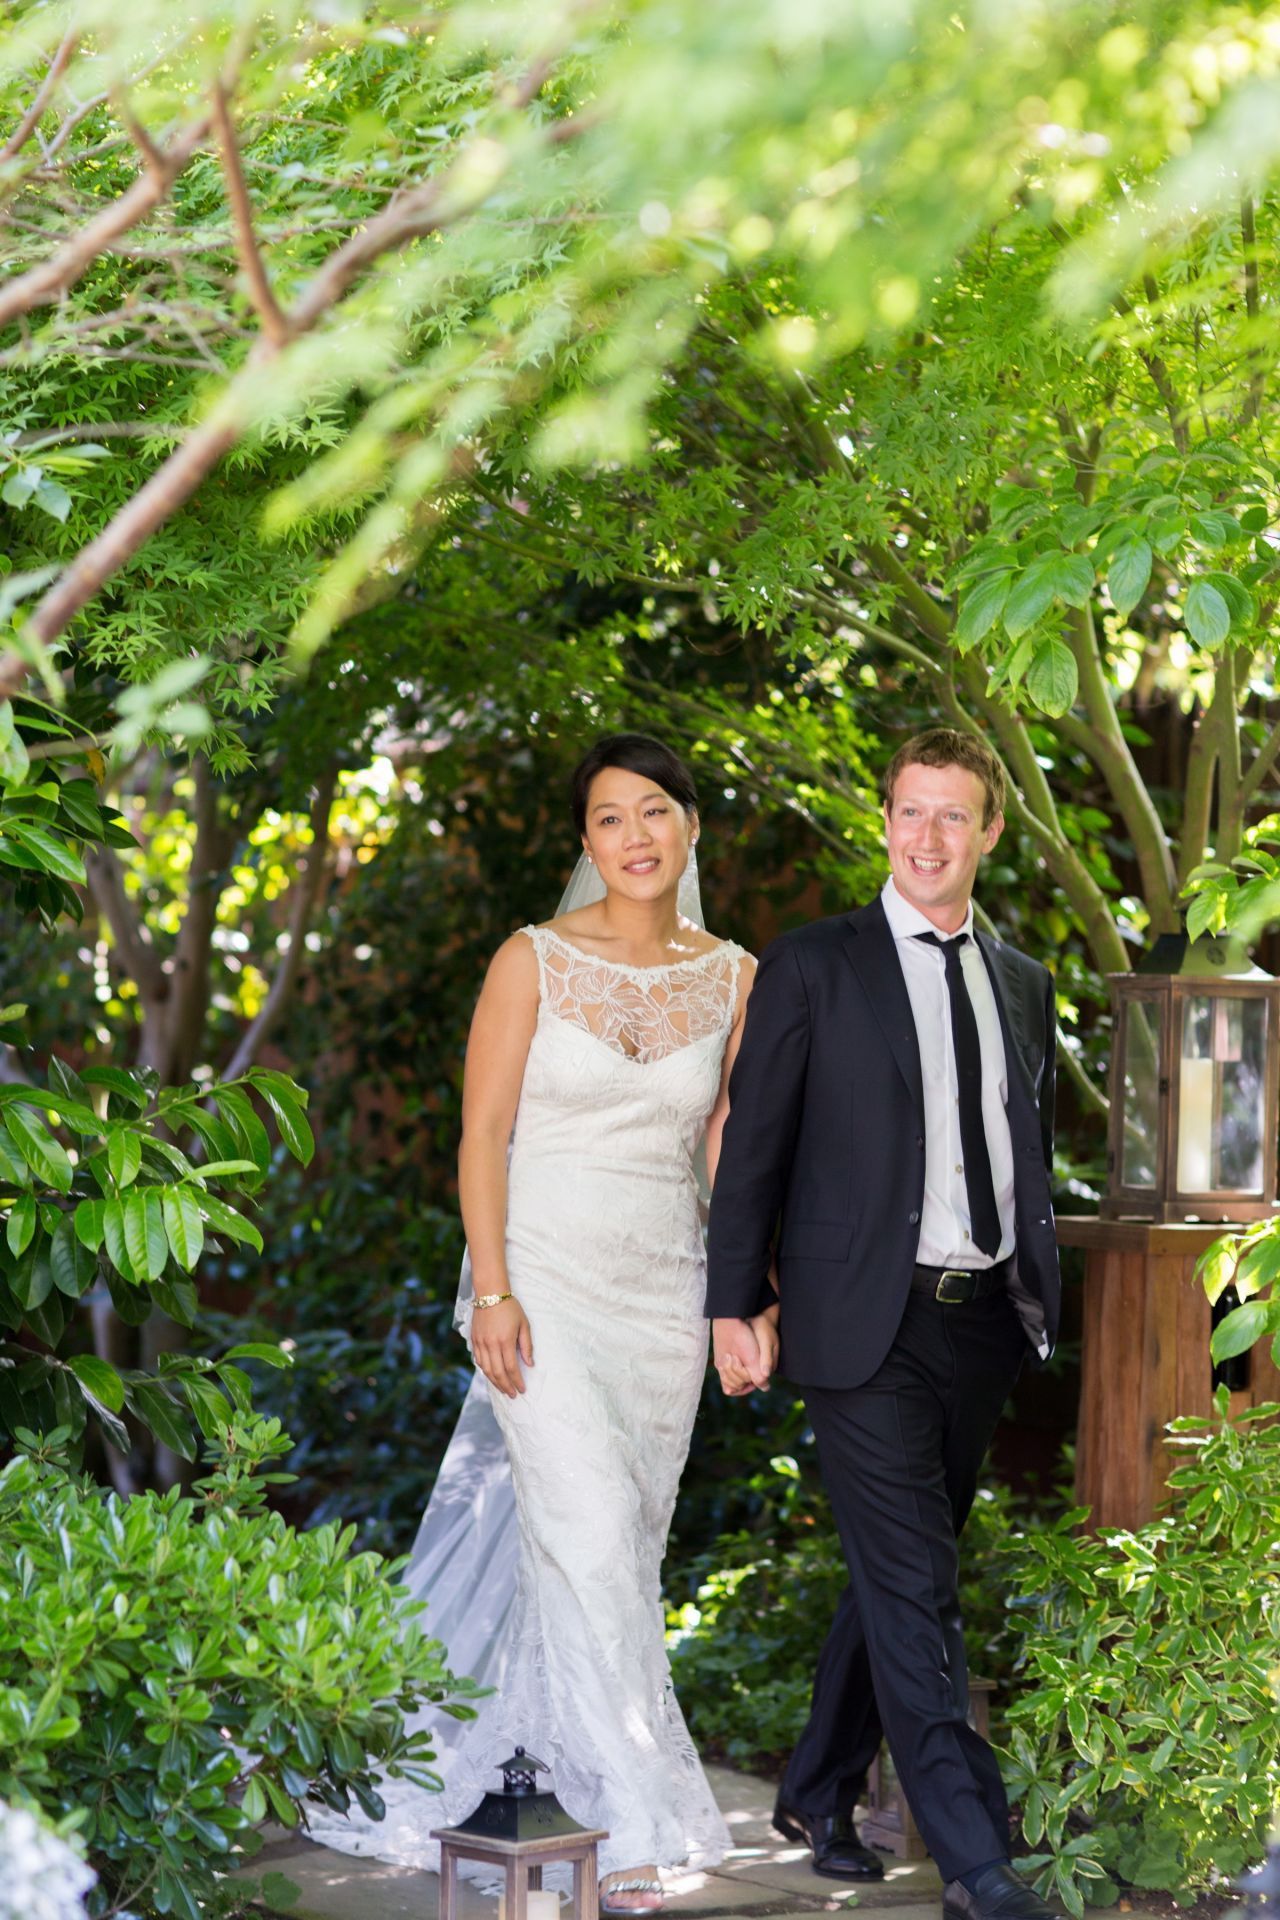 Mai 2012: Am 19. Mai, einen Tag nach dem Börsengang von Facebook, heiratet Zuckerberg seine Freundin Priscilla Chan.